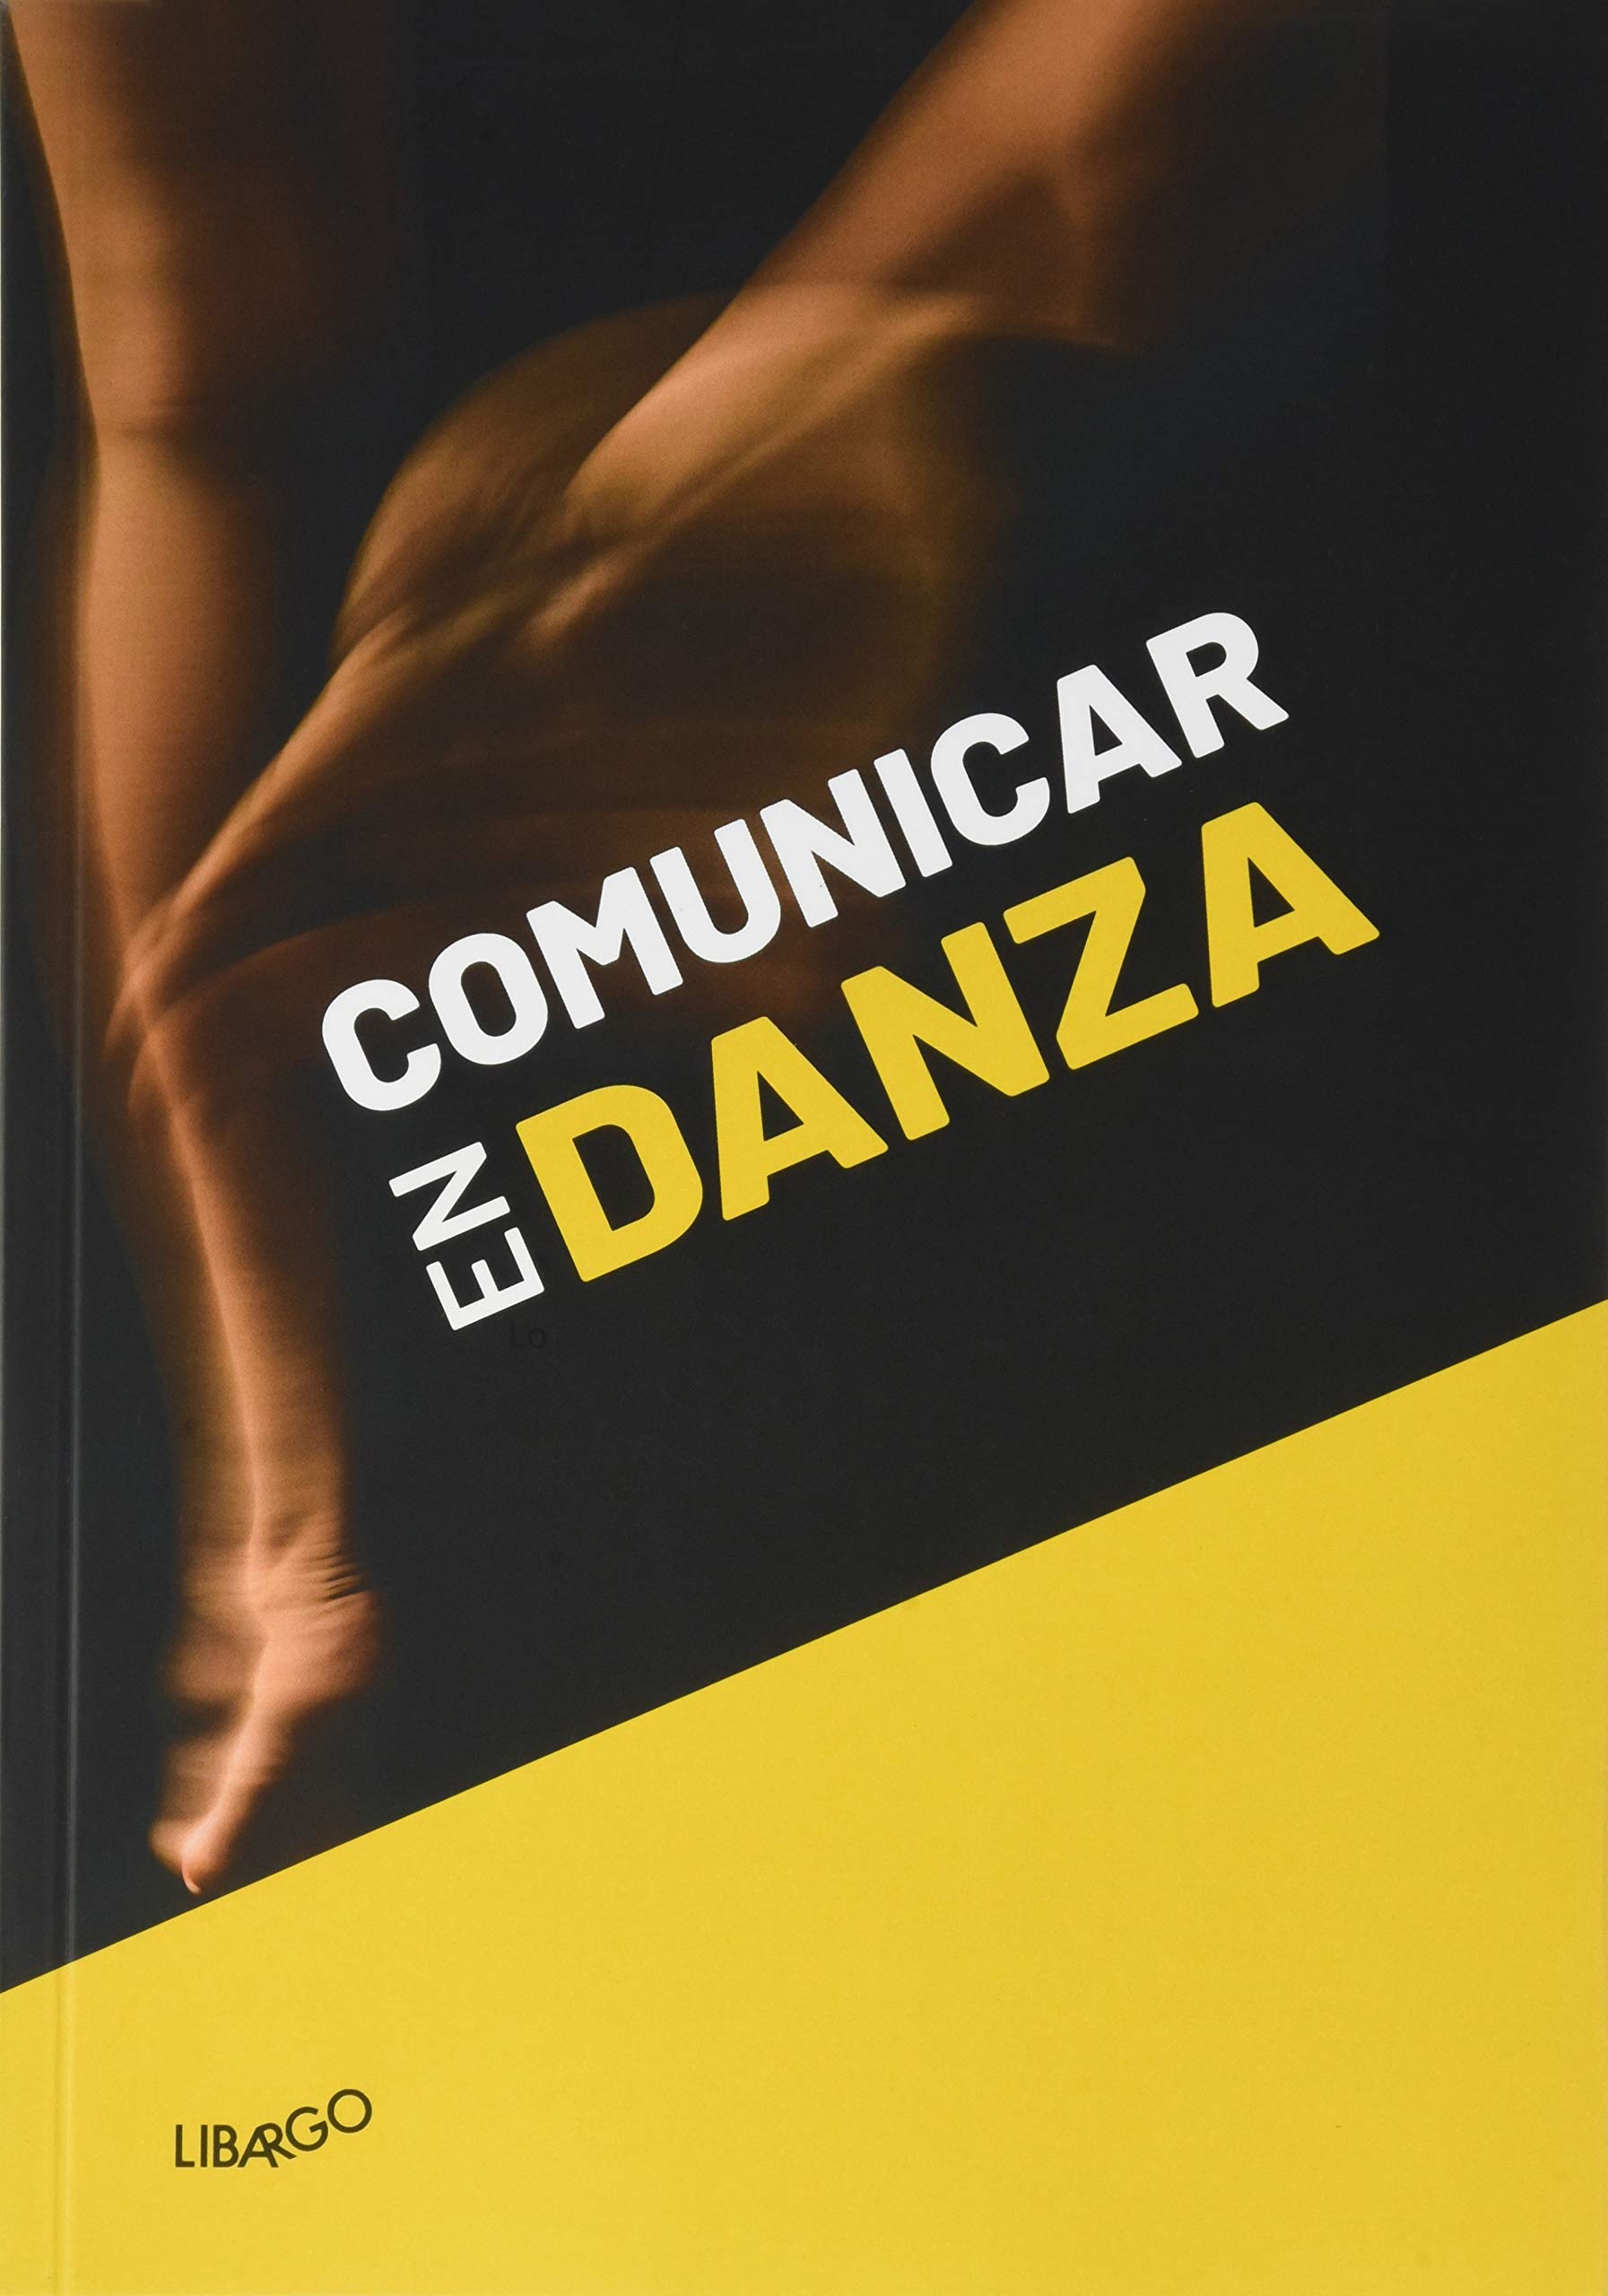 Imagen de portada del libro Comunicar en Danza